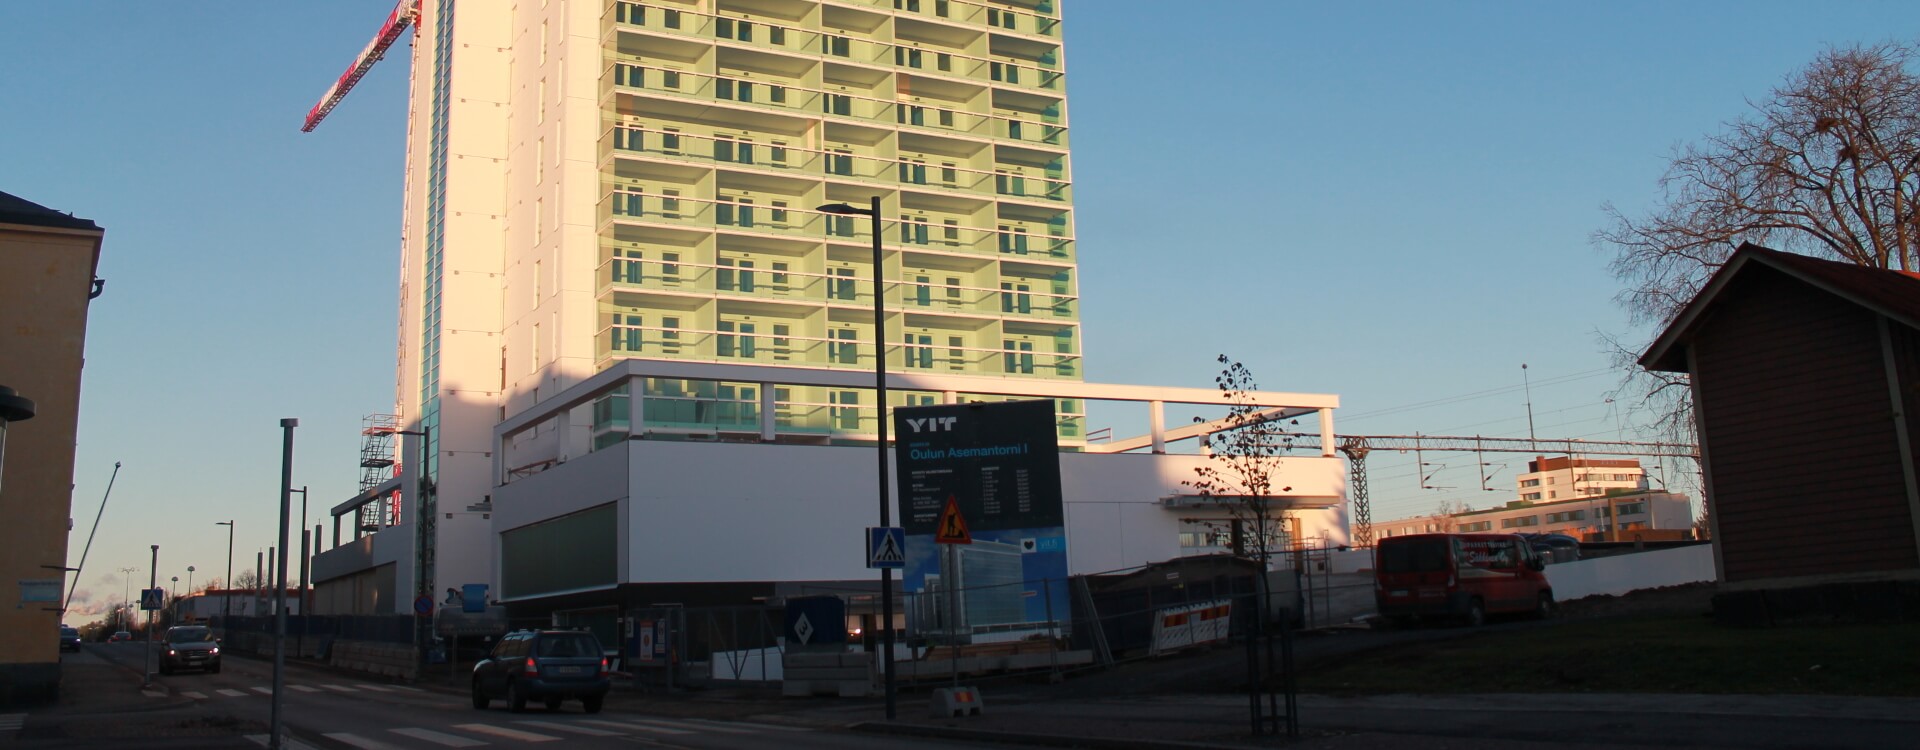 Rakenteilla oleva Oulun Asemantorni 1 -kerrostalo